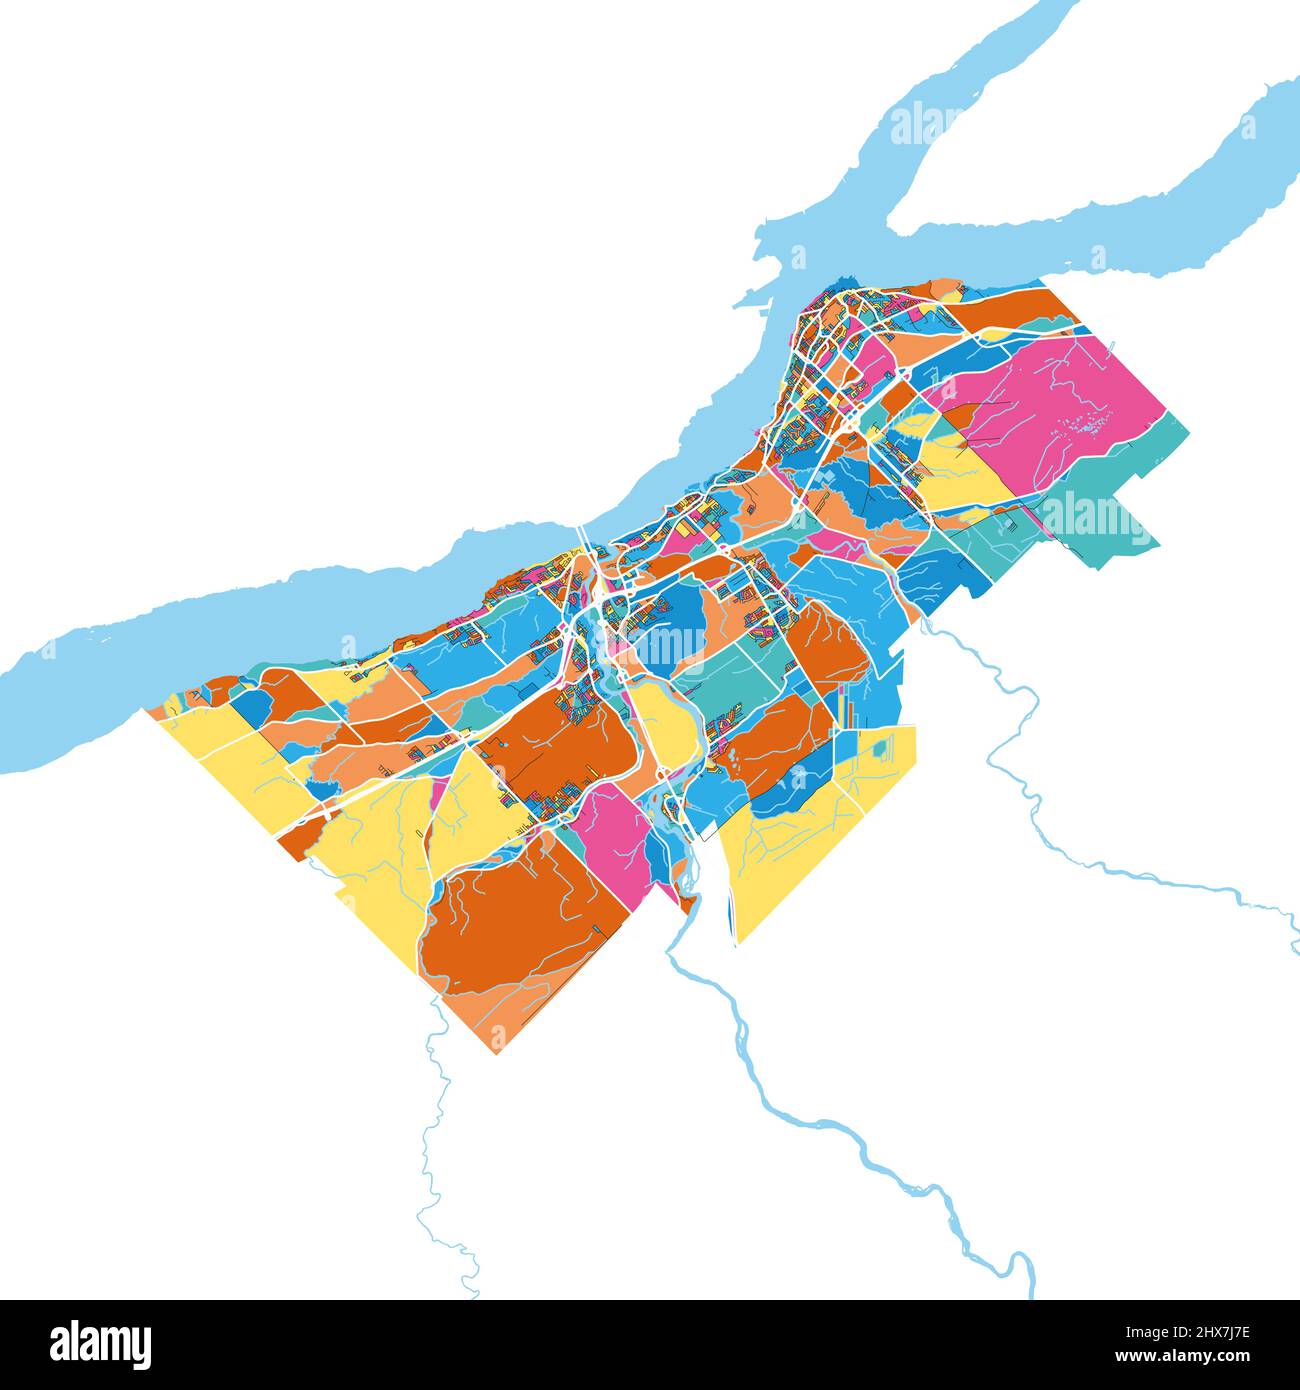 Levis, Quebec, Kanada Bunte hochauflösende Vektorgrafik-Karte mit Stadtgrenzen. Weiße Umrisse für Hauptstraßen. Viele Details. Blaue Formen für Wasser Stock Vektor